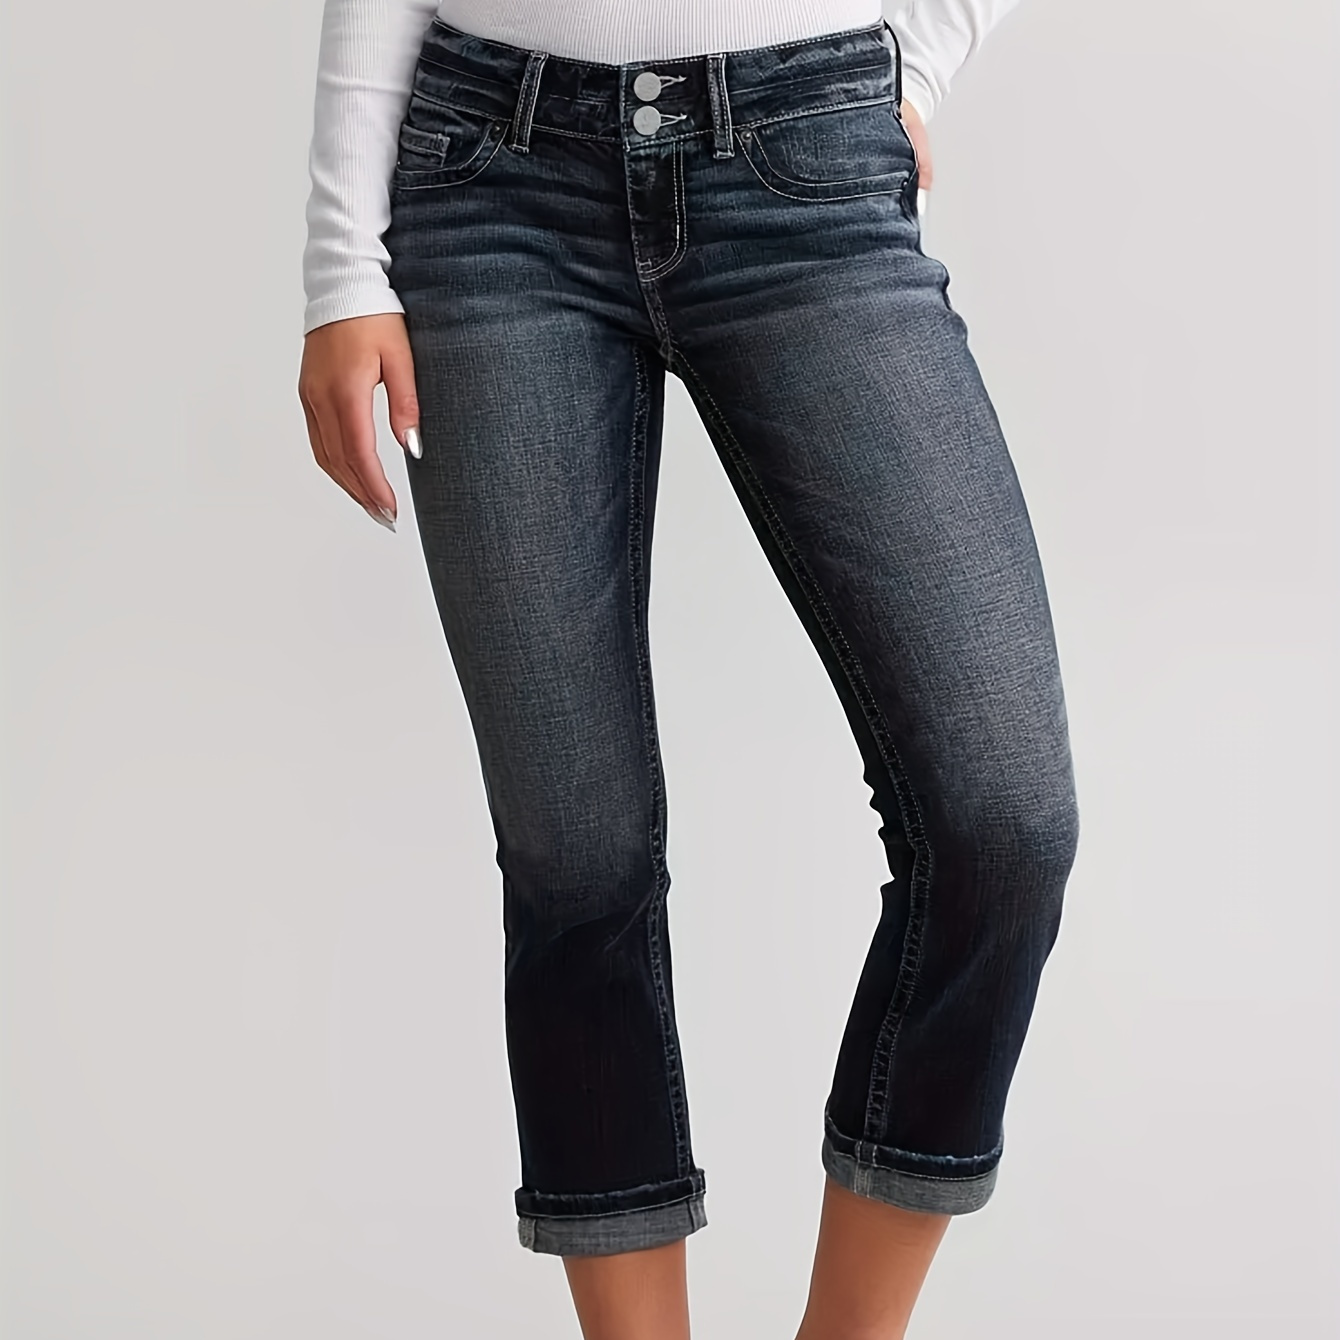 

Women's Summer Vintage Style Slim Fit Capri Jeans, Retro Double Buttons Waist Plain Denim Pants With Cuffed Hem